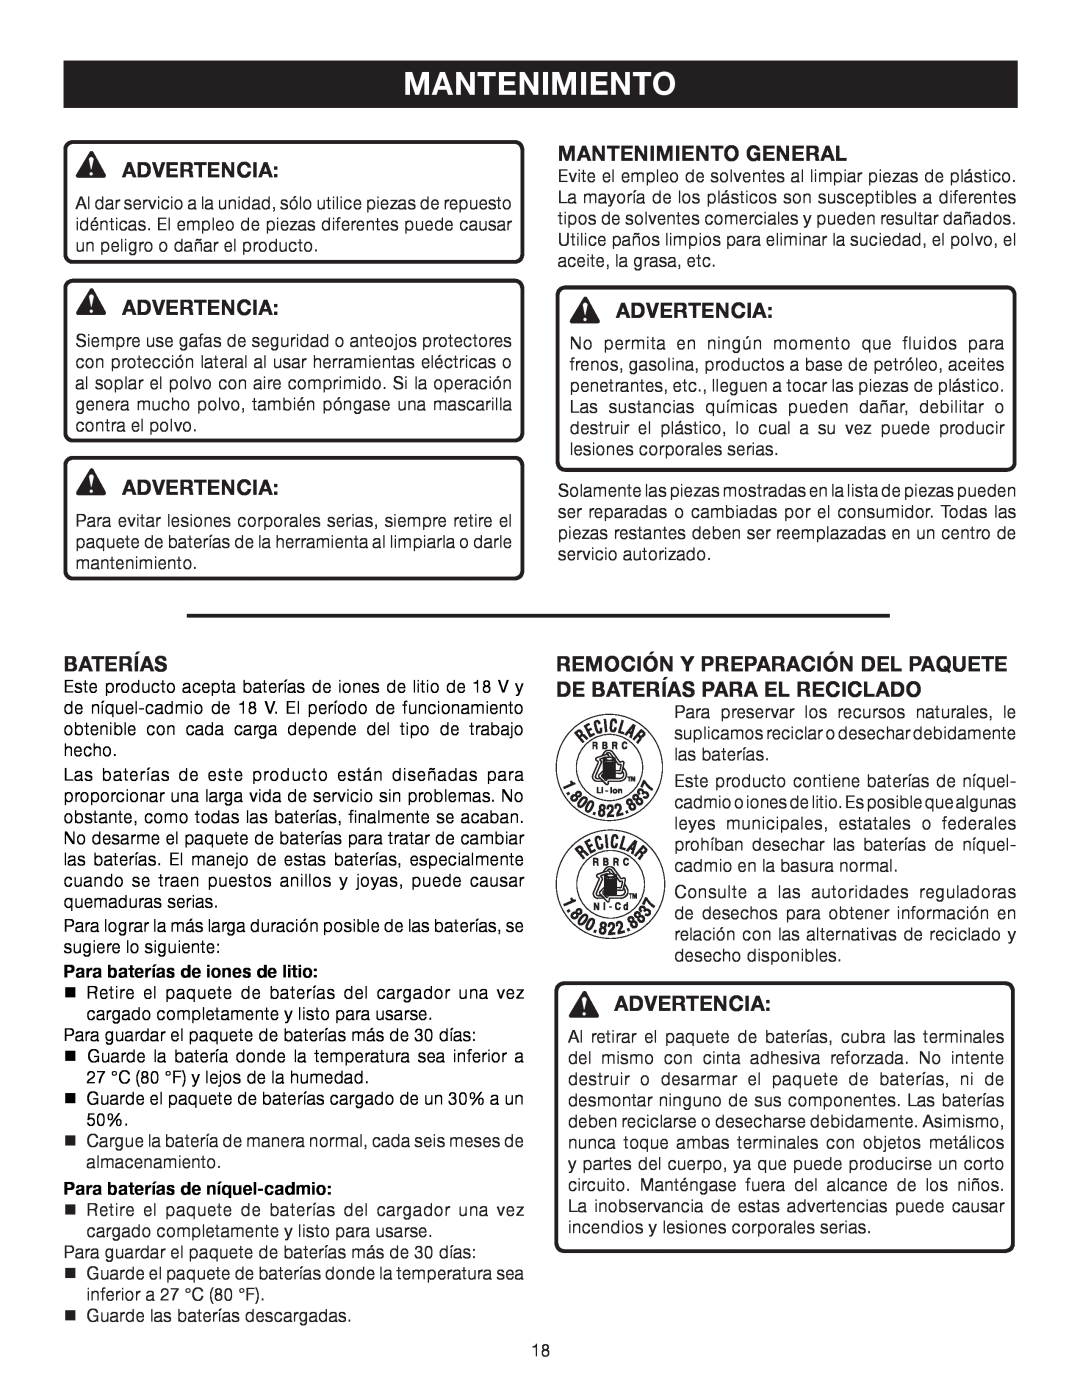 Ryobi P600 manual Mantenimiento General, Advertencia Advertencia, Baterías 